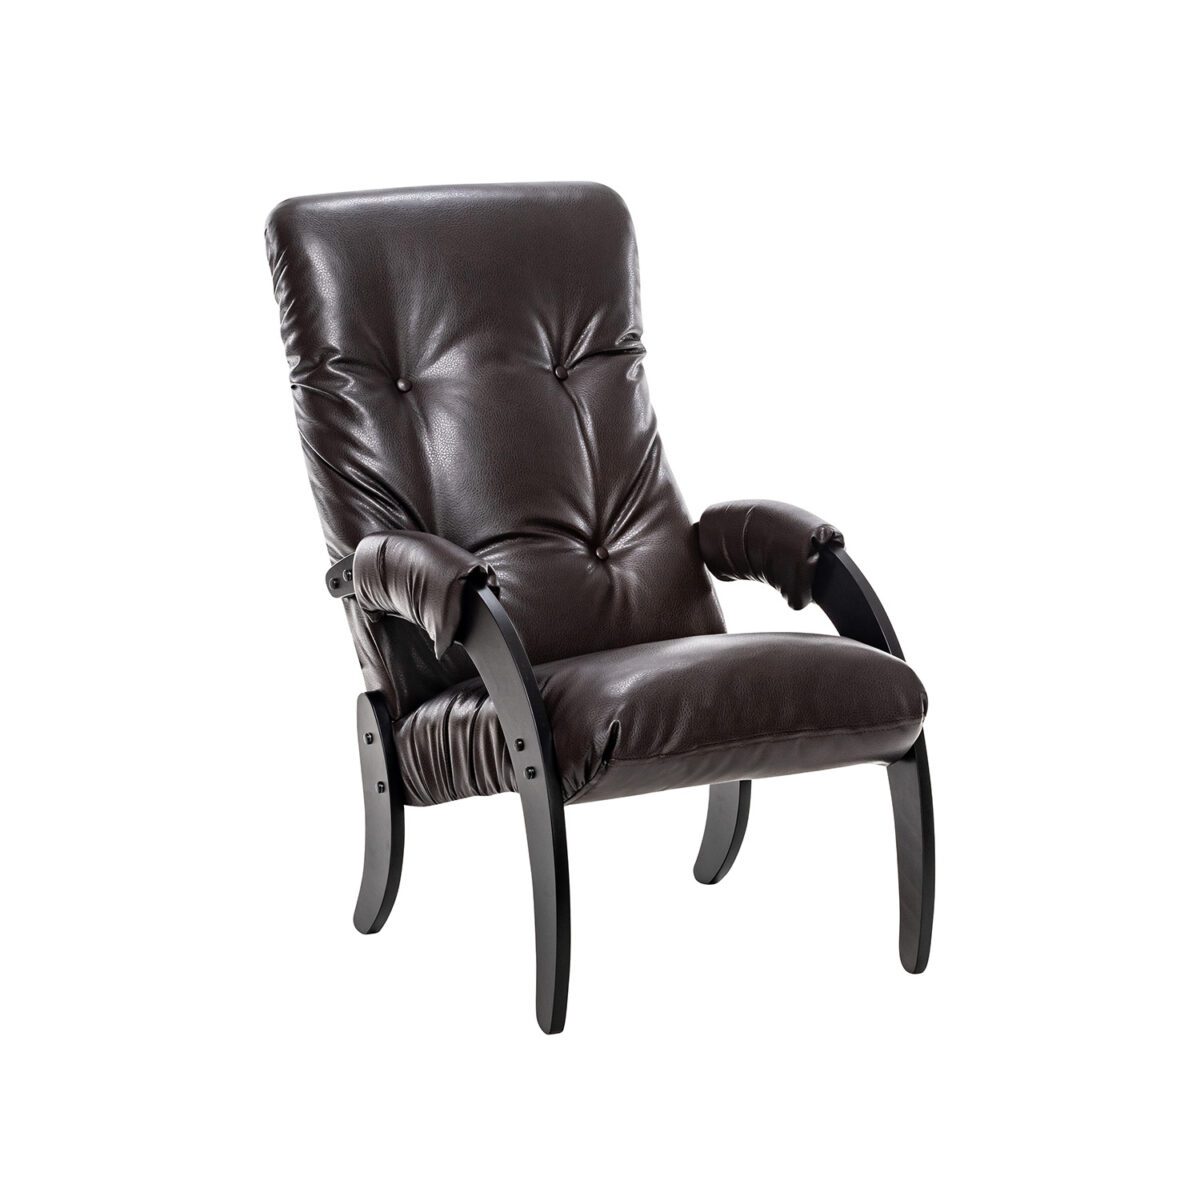 Кресло для отдыха Модель 61 Венге текстура, к/з Varana DK-BROWN